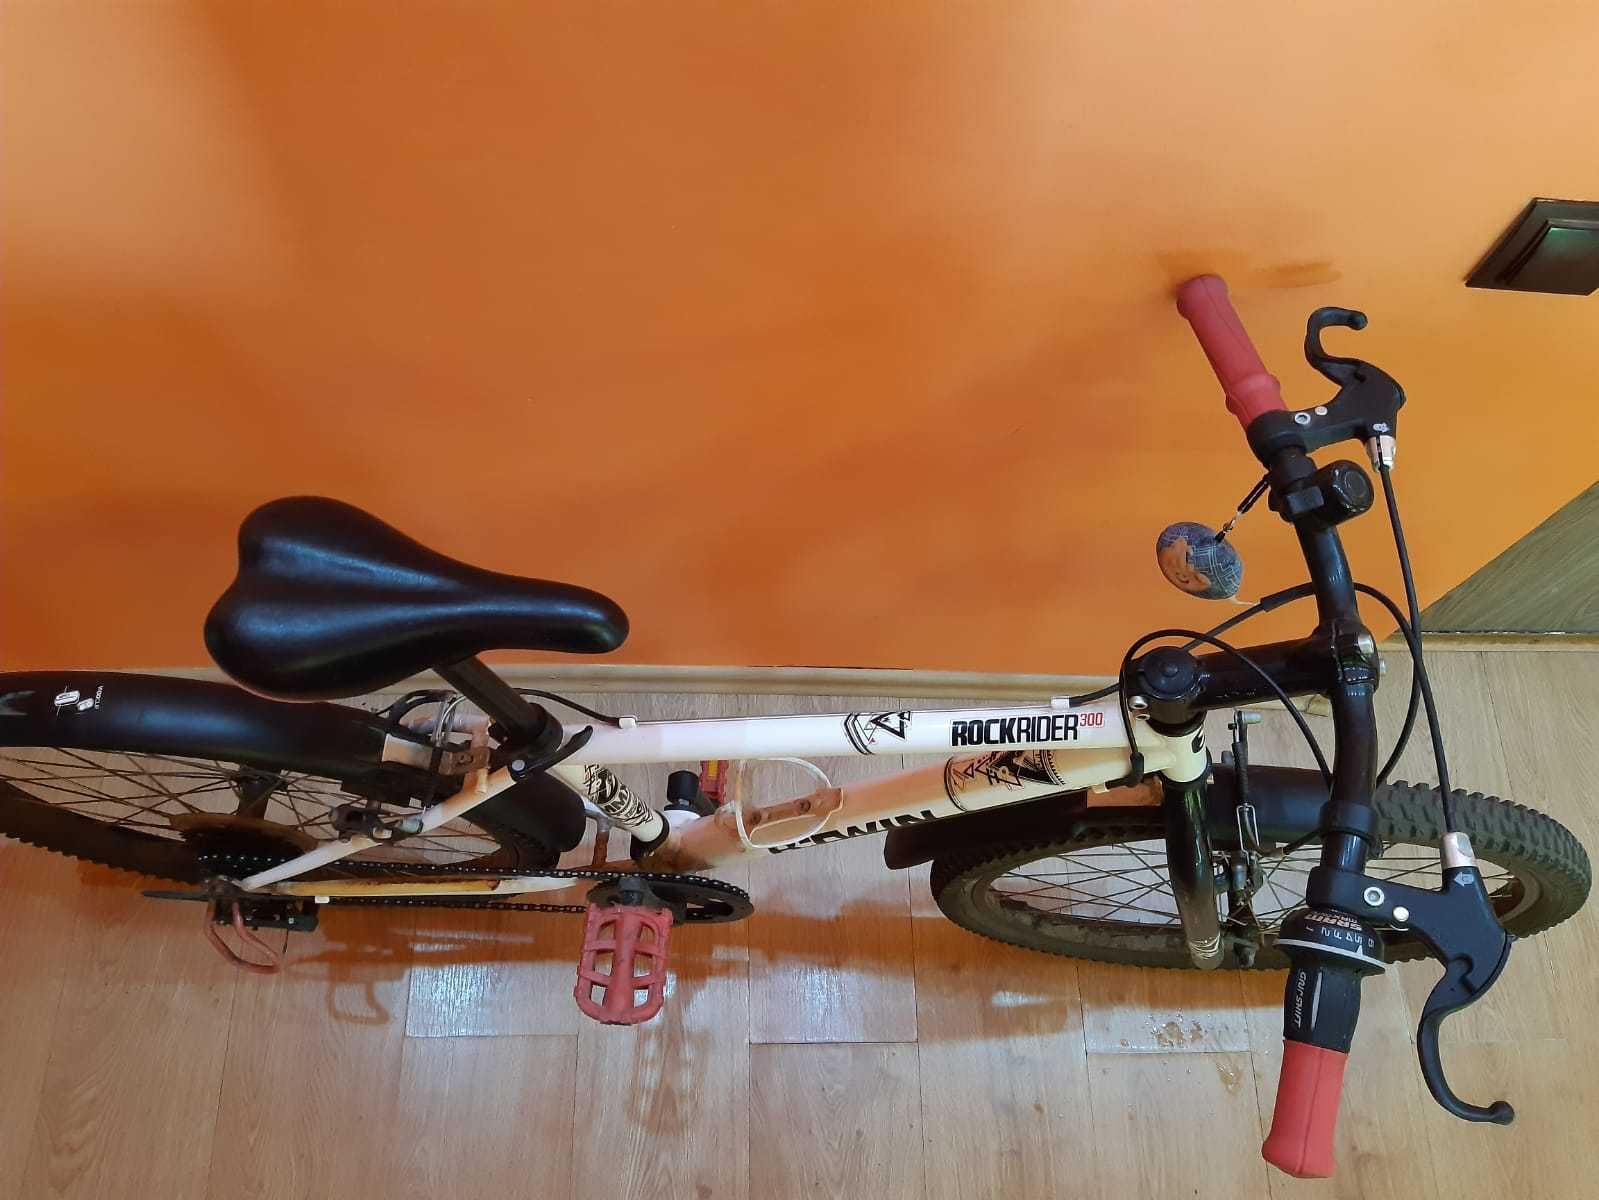 Bicicleta FIRST BIKE - pentru tineri